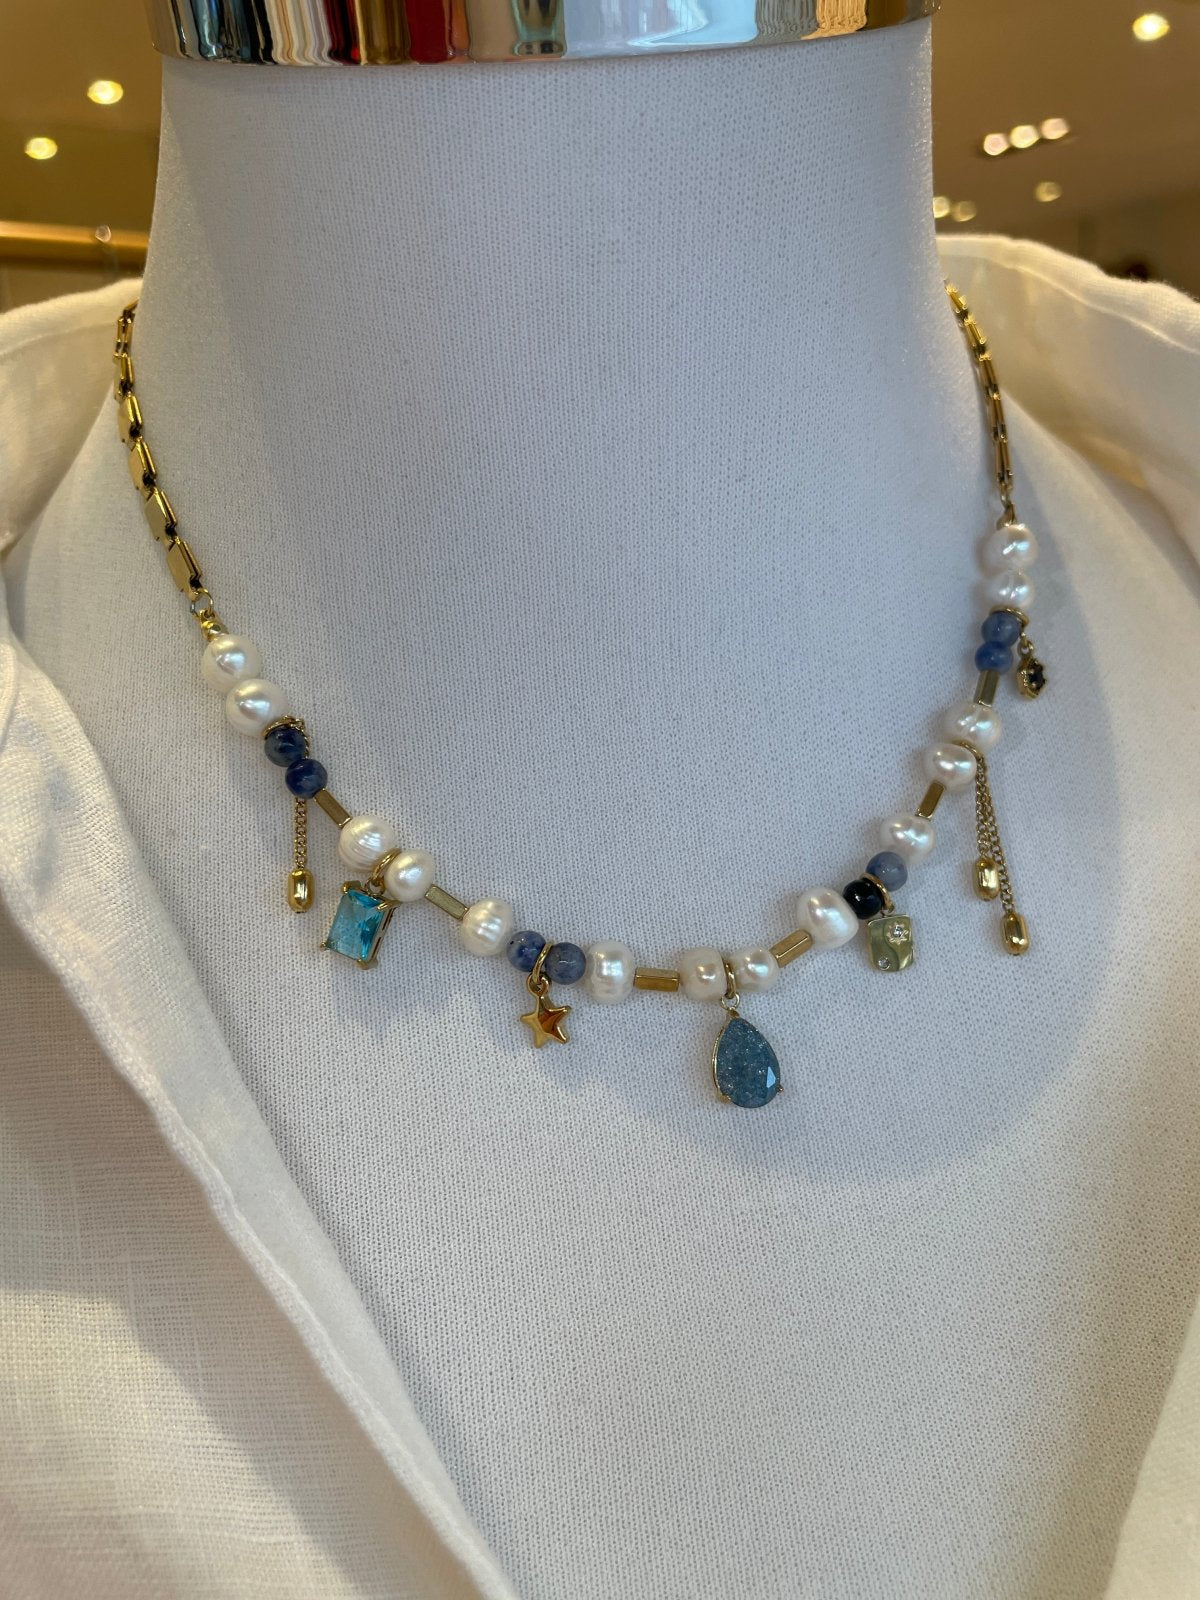 St Lucia Boutique Isla charm necklace - Shop women's Accessories at St Lucia Boutique